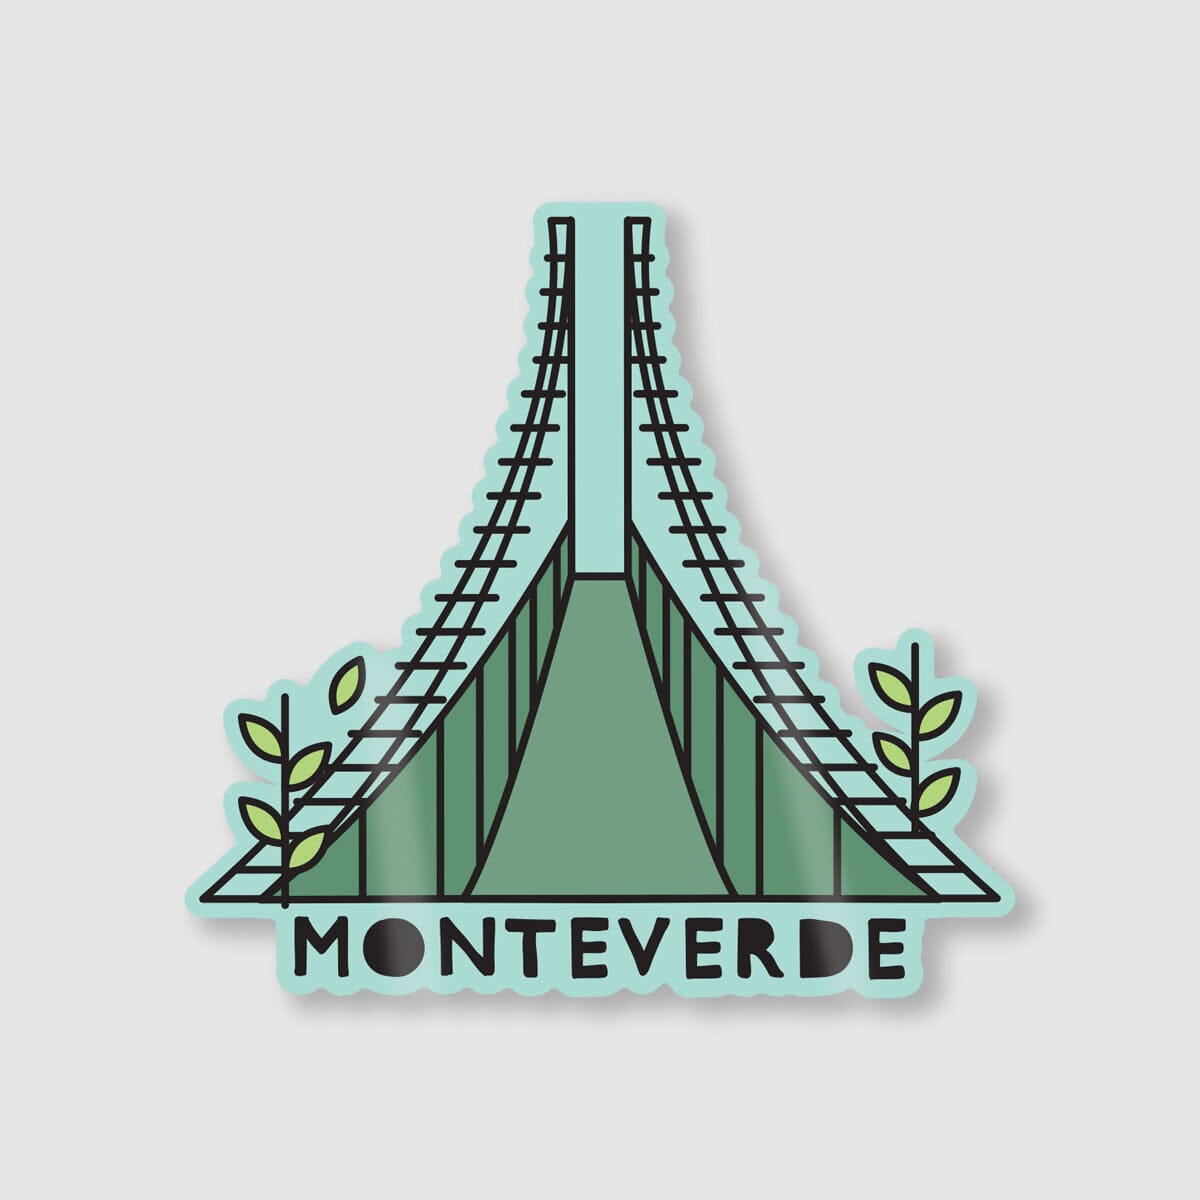 Stickers Individuales La Fiebre de Viajar Monteverde 